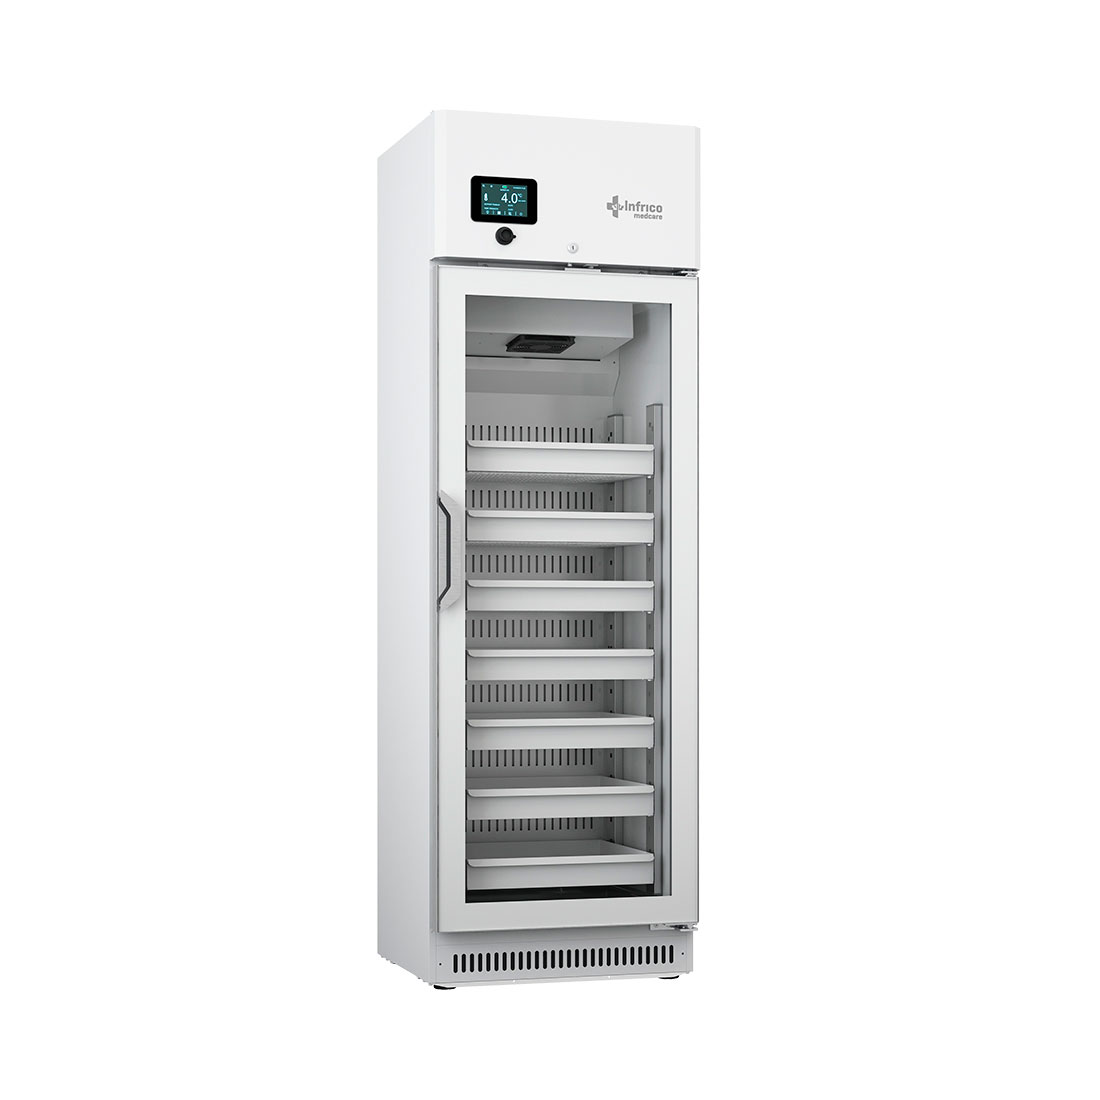 Armario de refrigeración vertical de 300 litros de capacidad nominal y tecnología INVERTER. INFRICO MEDCARE.